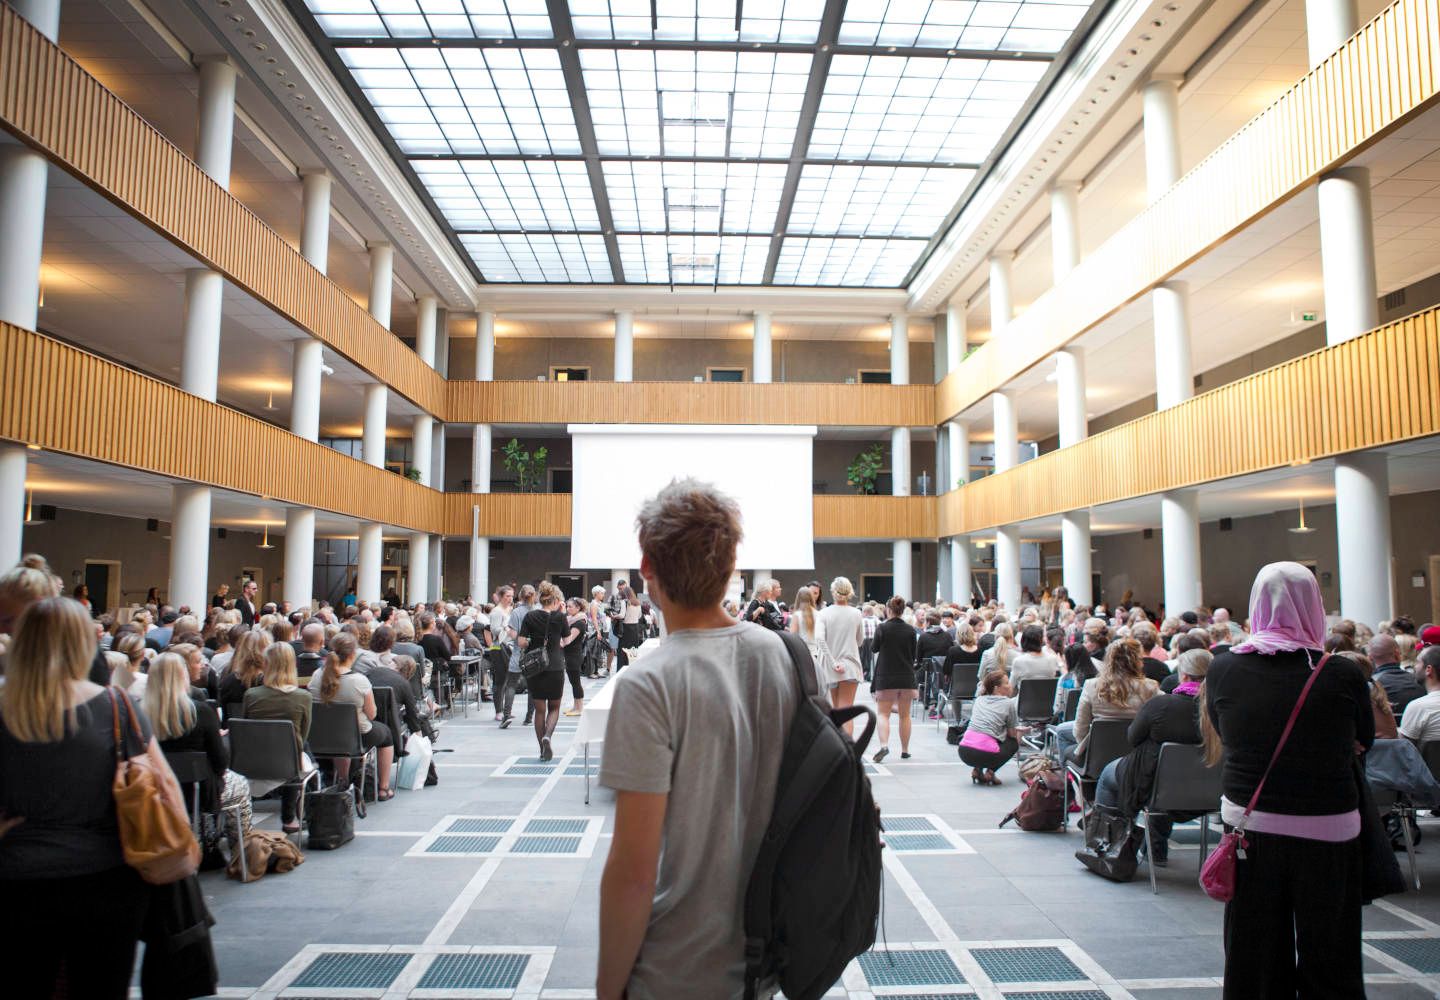 Hundredvis af studerende samlet til studiestart på Aarhus Universitet